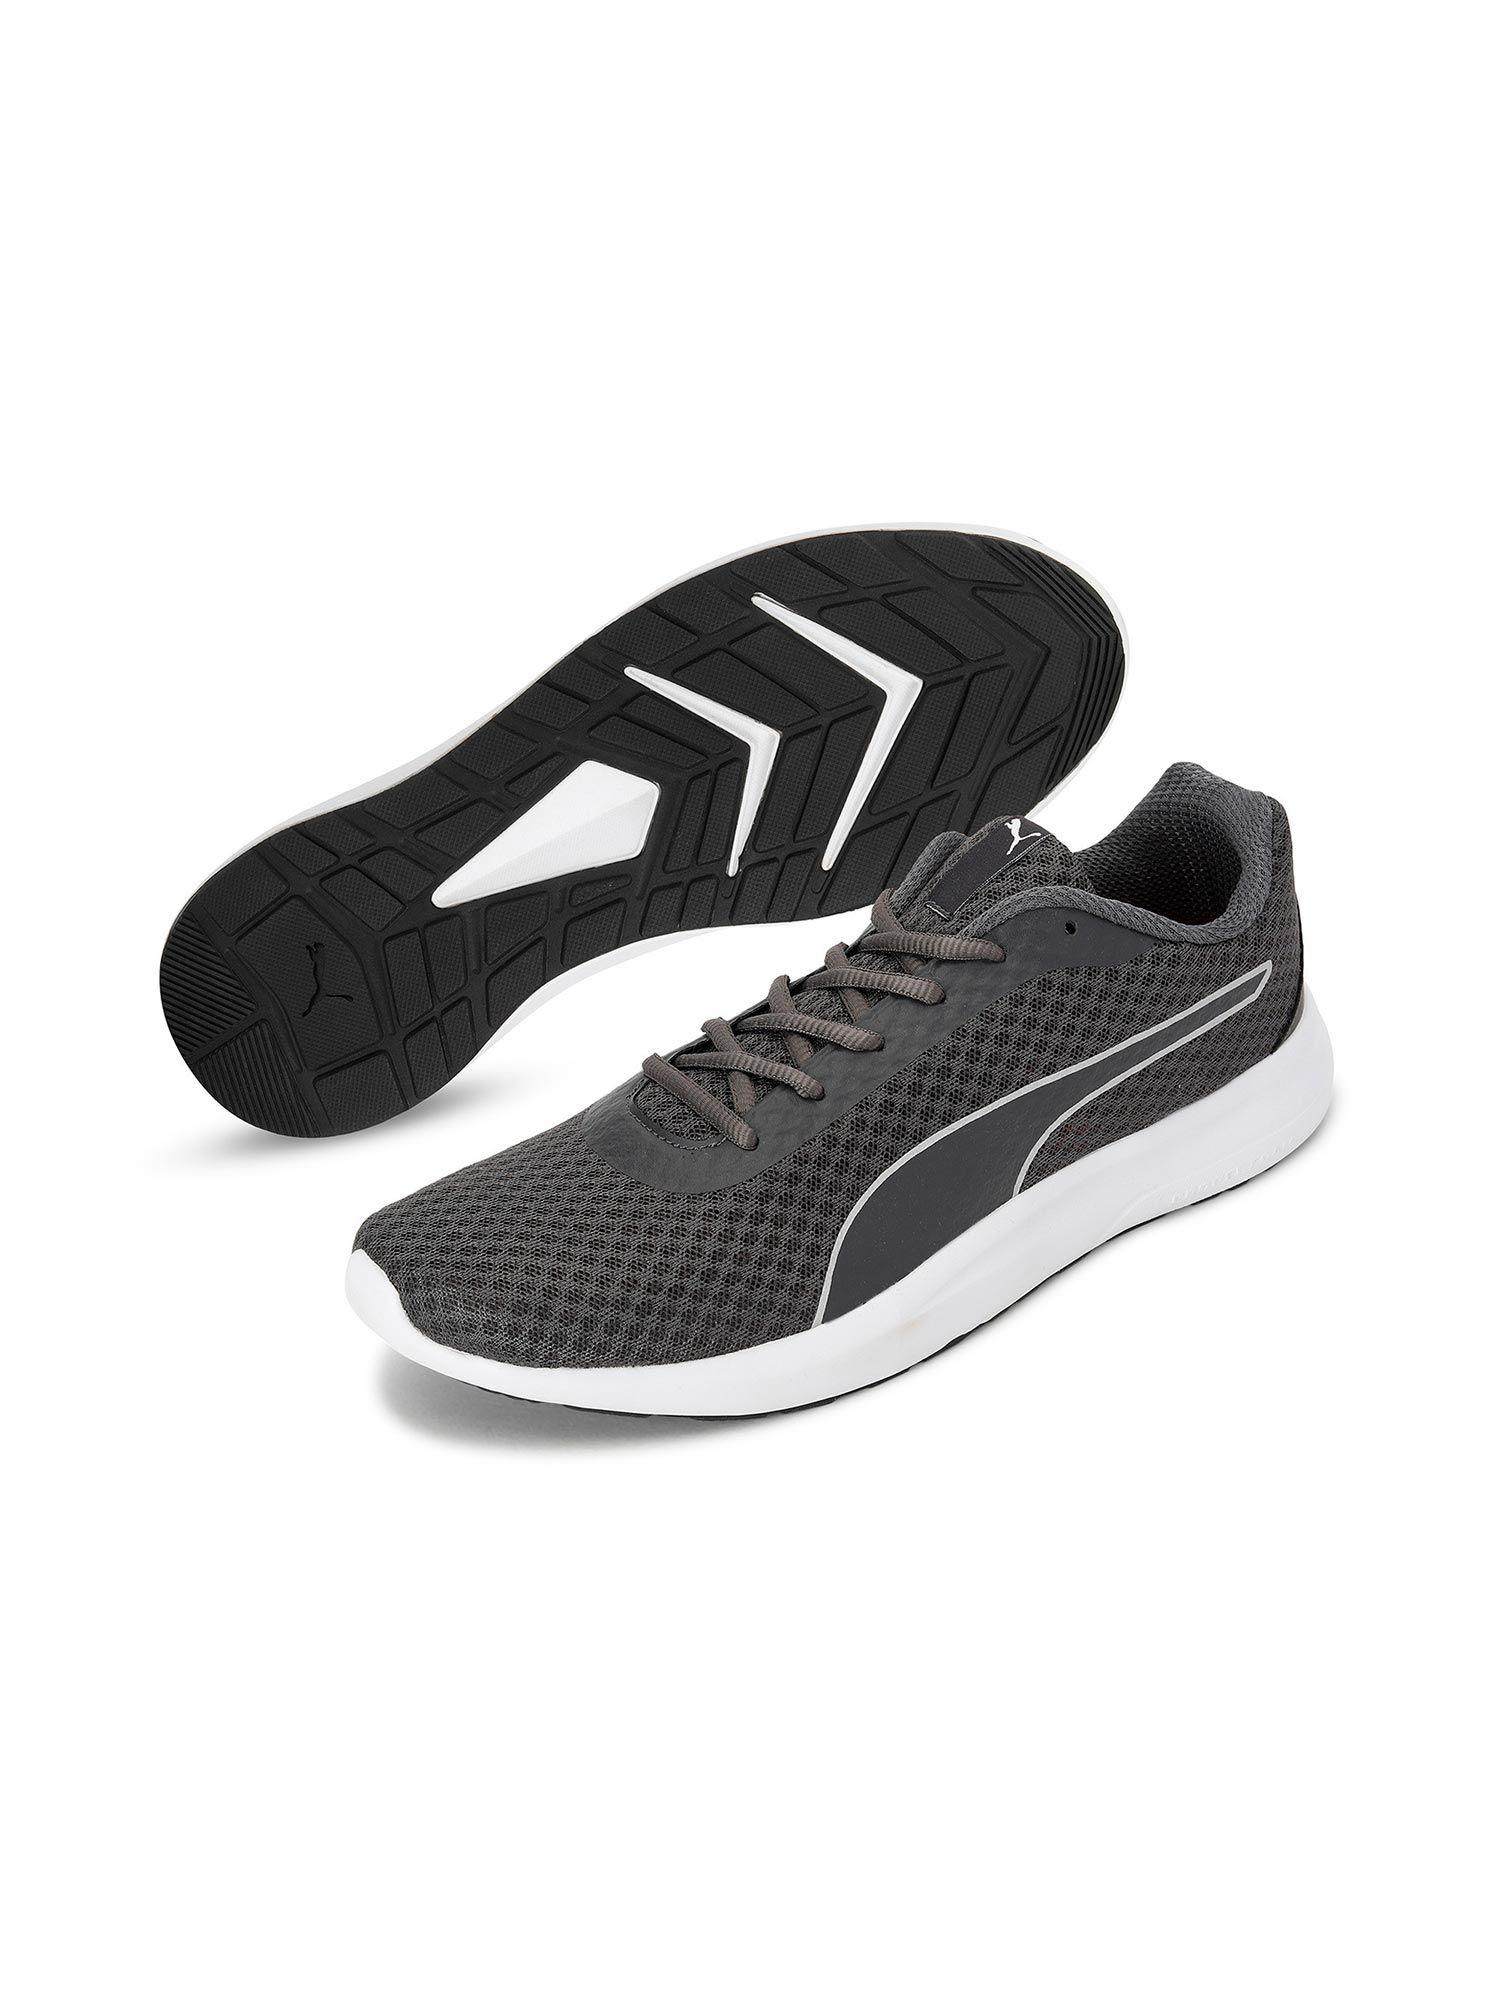 propel-el-men's-sportstyle-grey-casual-shoes